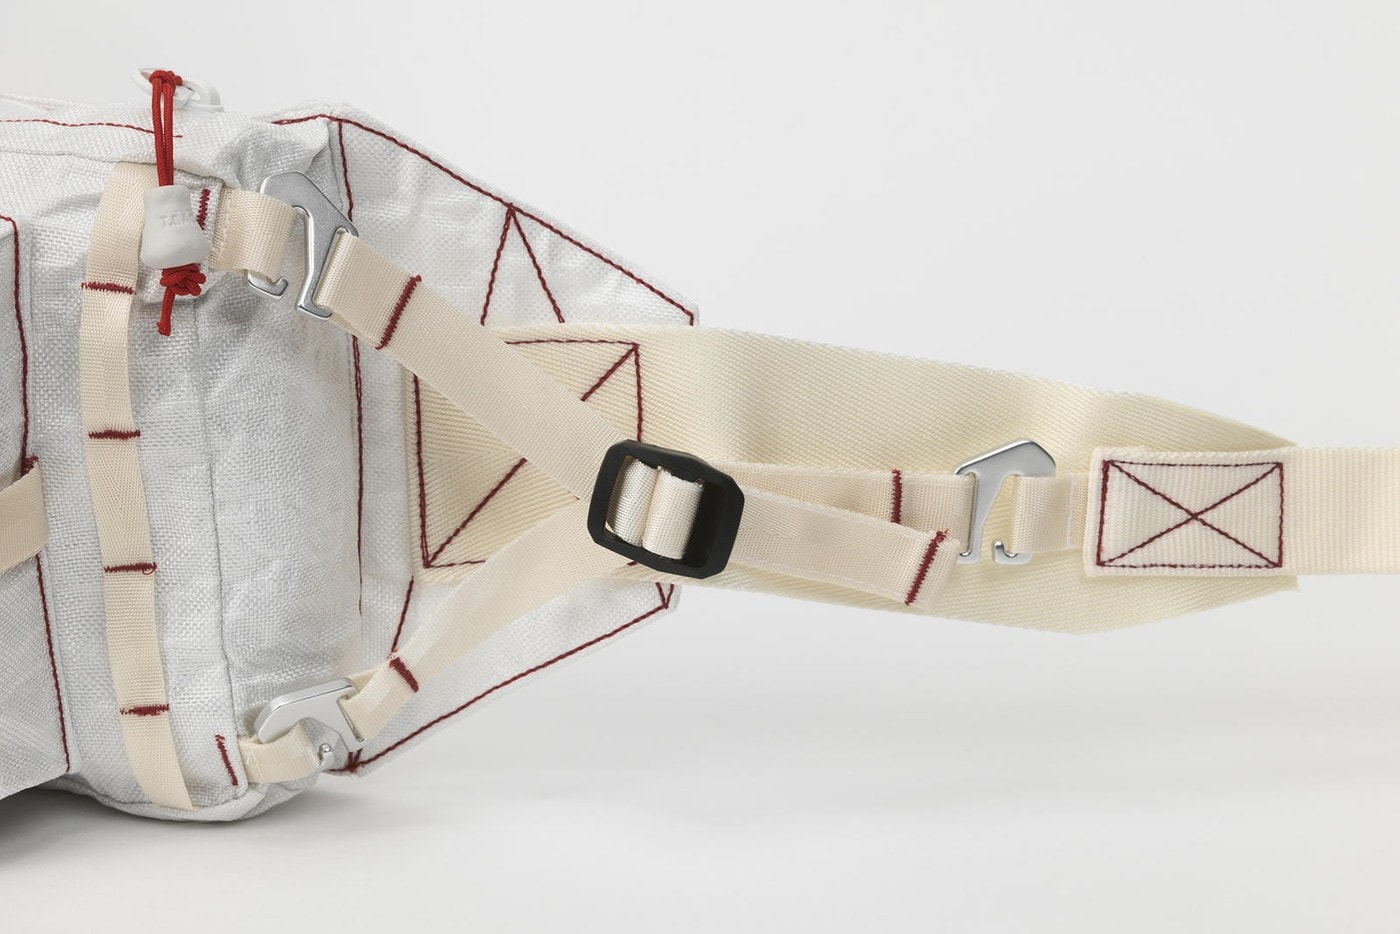 Tom Sachs x Nike Craft 全新太空聯乘系列單品圖片公開